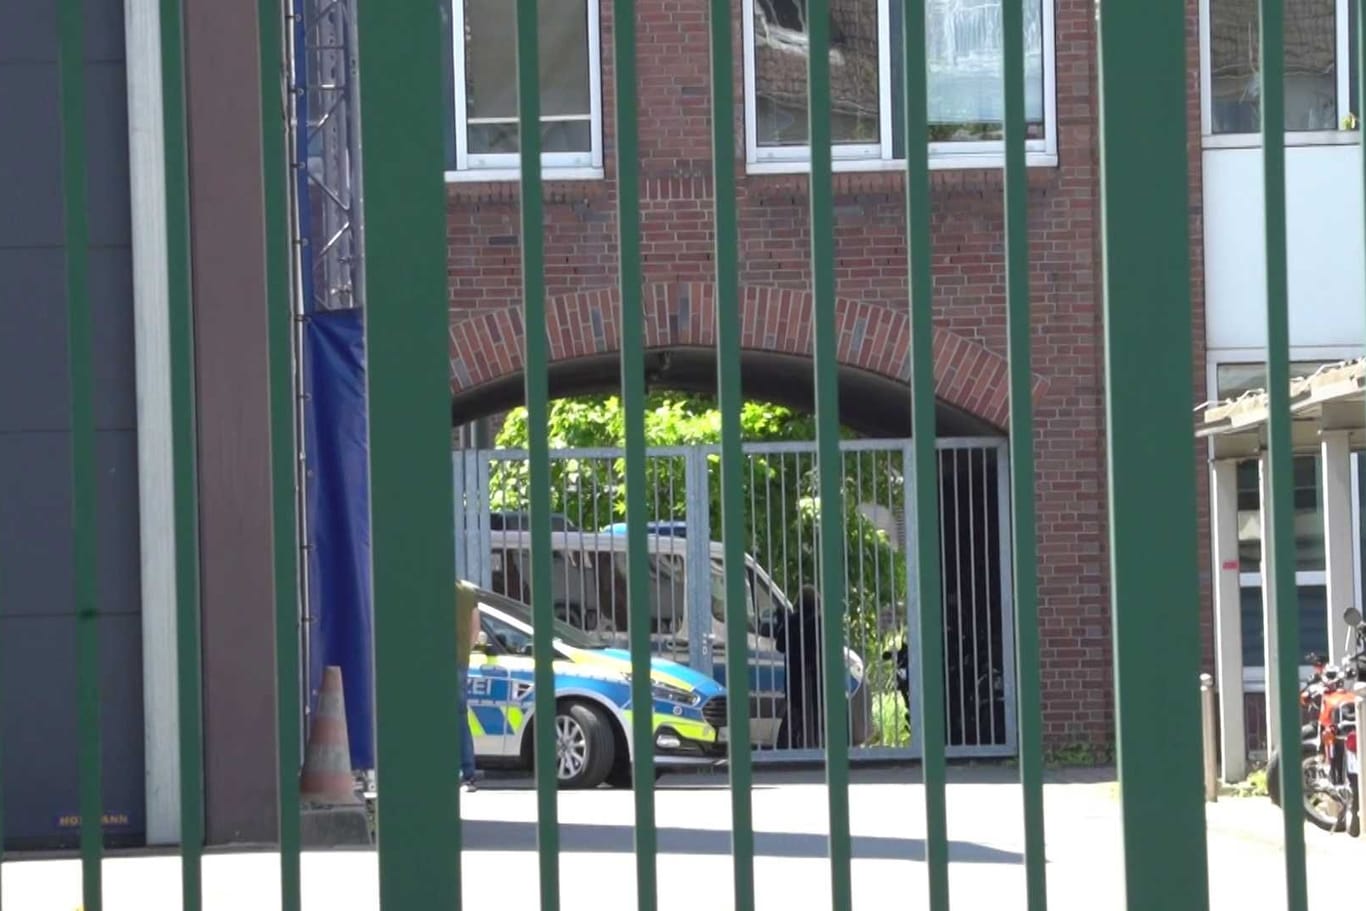 Außenansicht des Polizeipräsidiums in Dortmund mit parkenden Einsatzfahrzeugen (Archivbild).